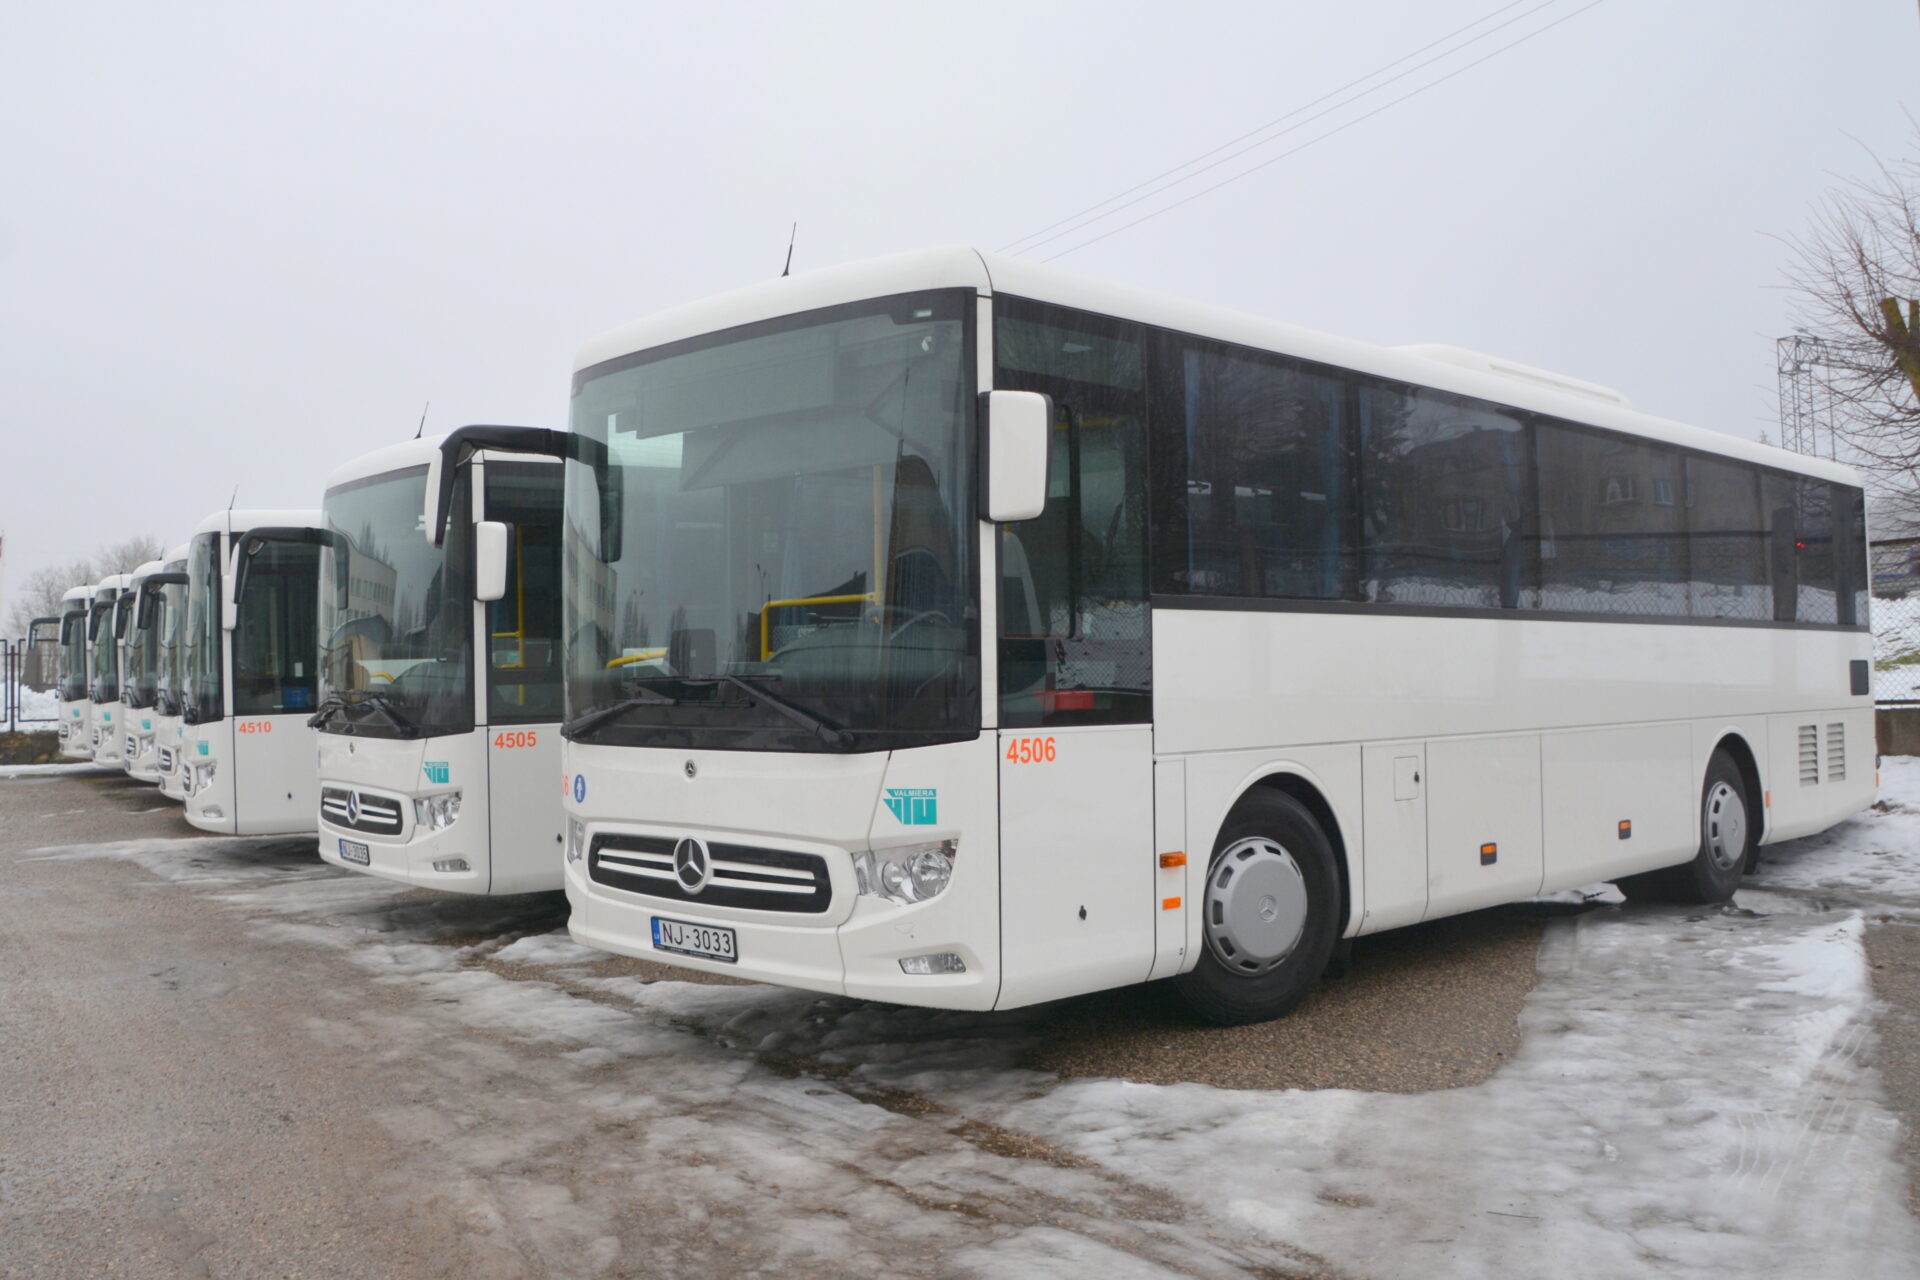 20.janvārī parakstītais līgums ar valsts SIA “Autotransporta direkcija”, kas paredz SIA “VTU Valmiera” arī turpmākos desmit gadus nodrošināt pakalpojumu maršrutu tīkla daļā “Valmiera, Valka, Smiltene”, nosaka arī jaunu autobusu iegādi. 26. janvārī valsts SIA “Autotransporta direkcija” komisija pārbaudīja astoņu jauno Mercedes Benz autobusu atbilstību konkursa un līguma prasībām.